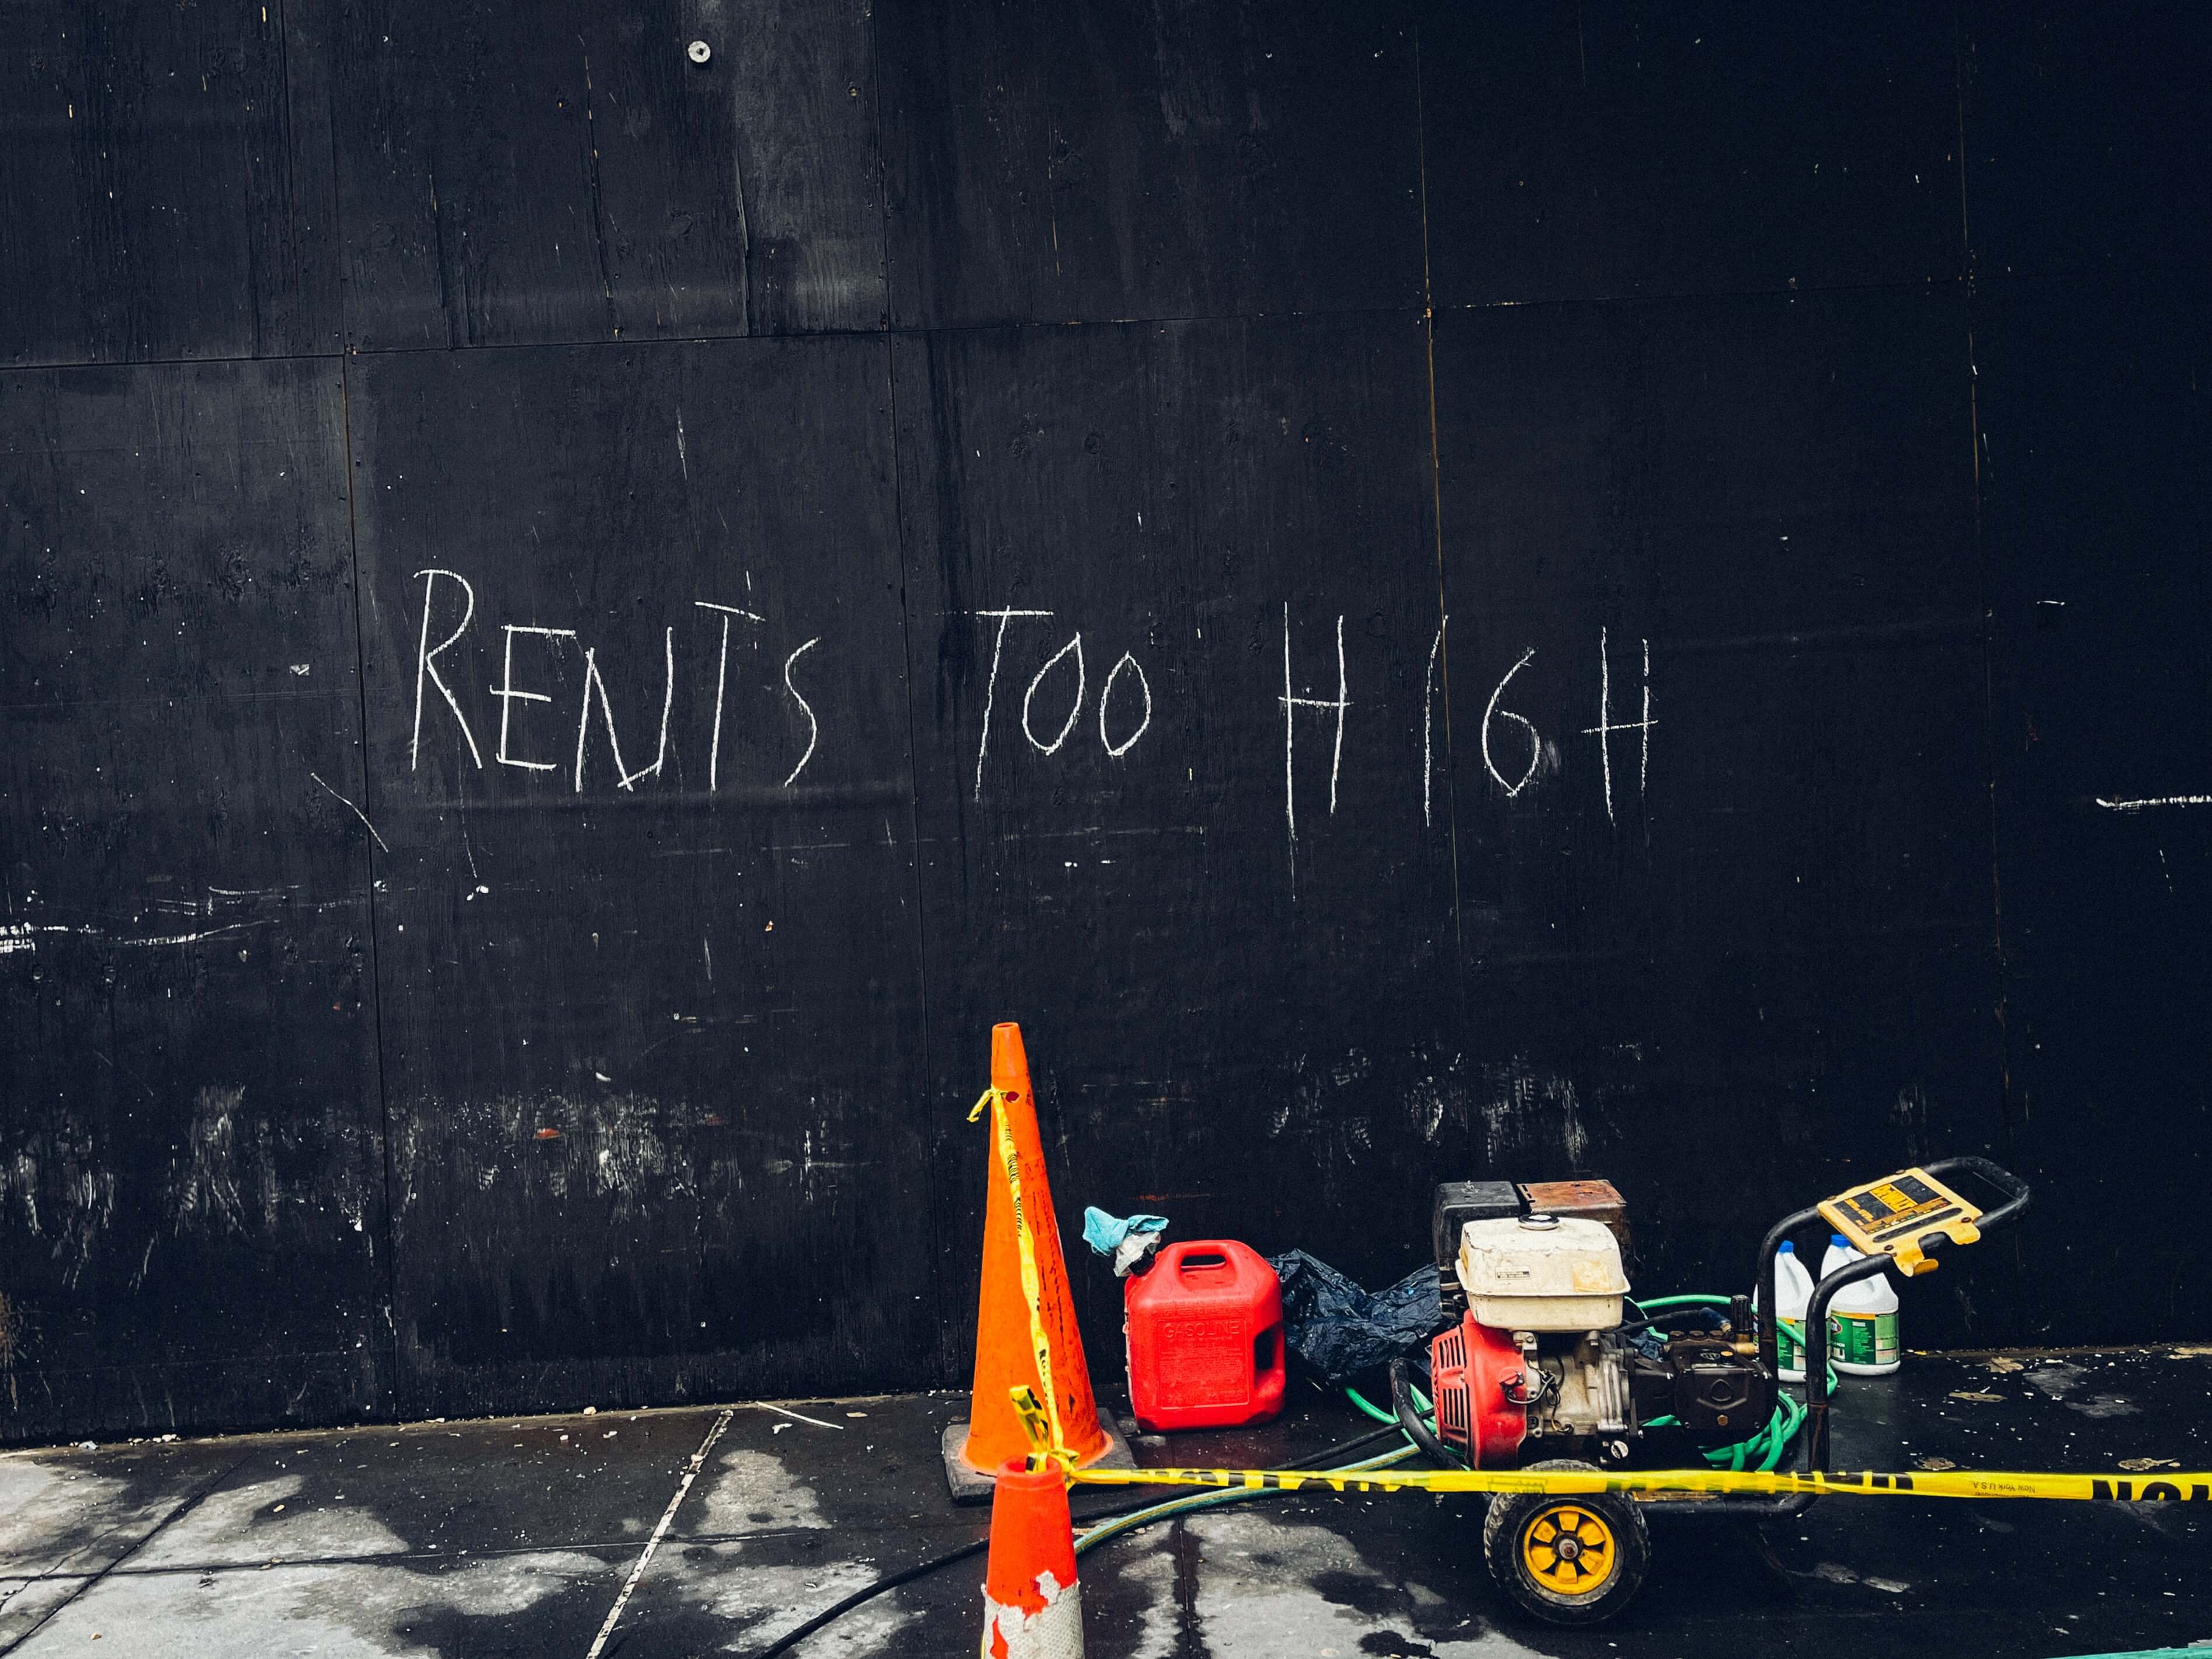 Rents too high written on a blackboard